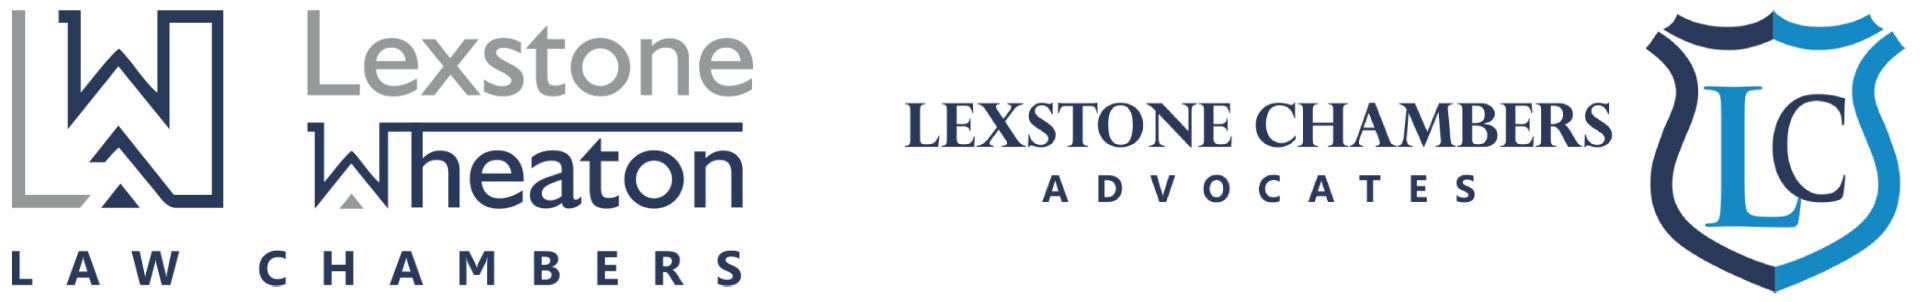 lexstone